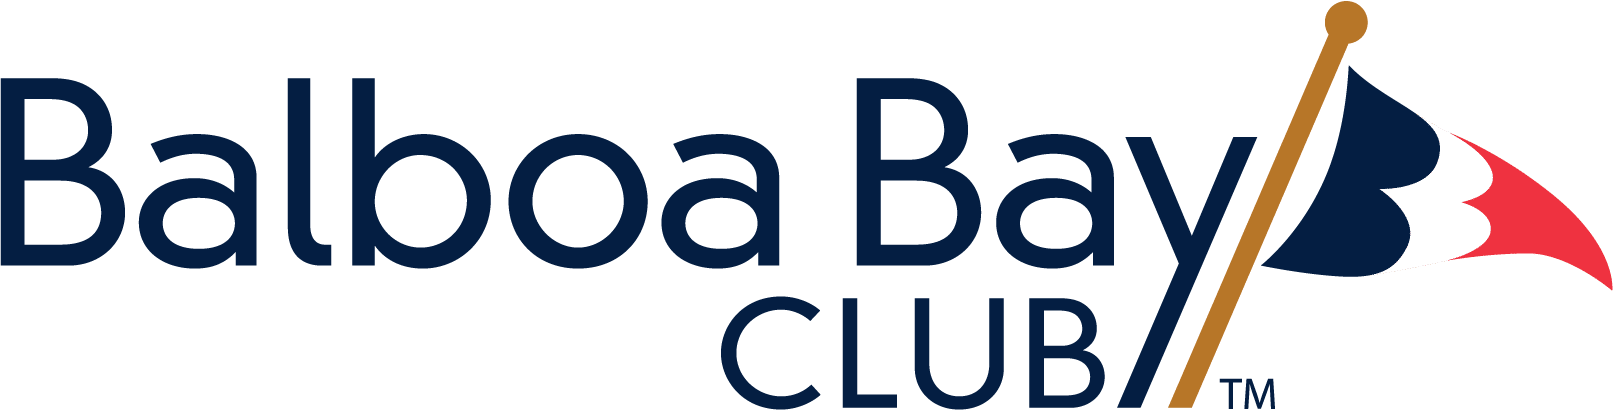 Логотип клуба Бальбоа Бэй